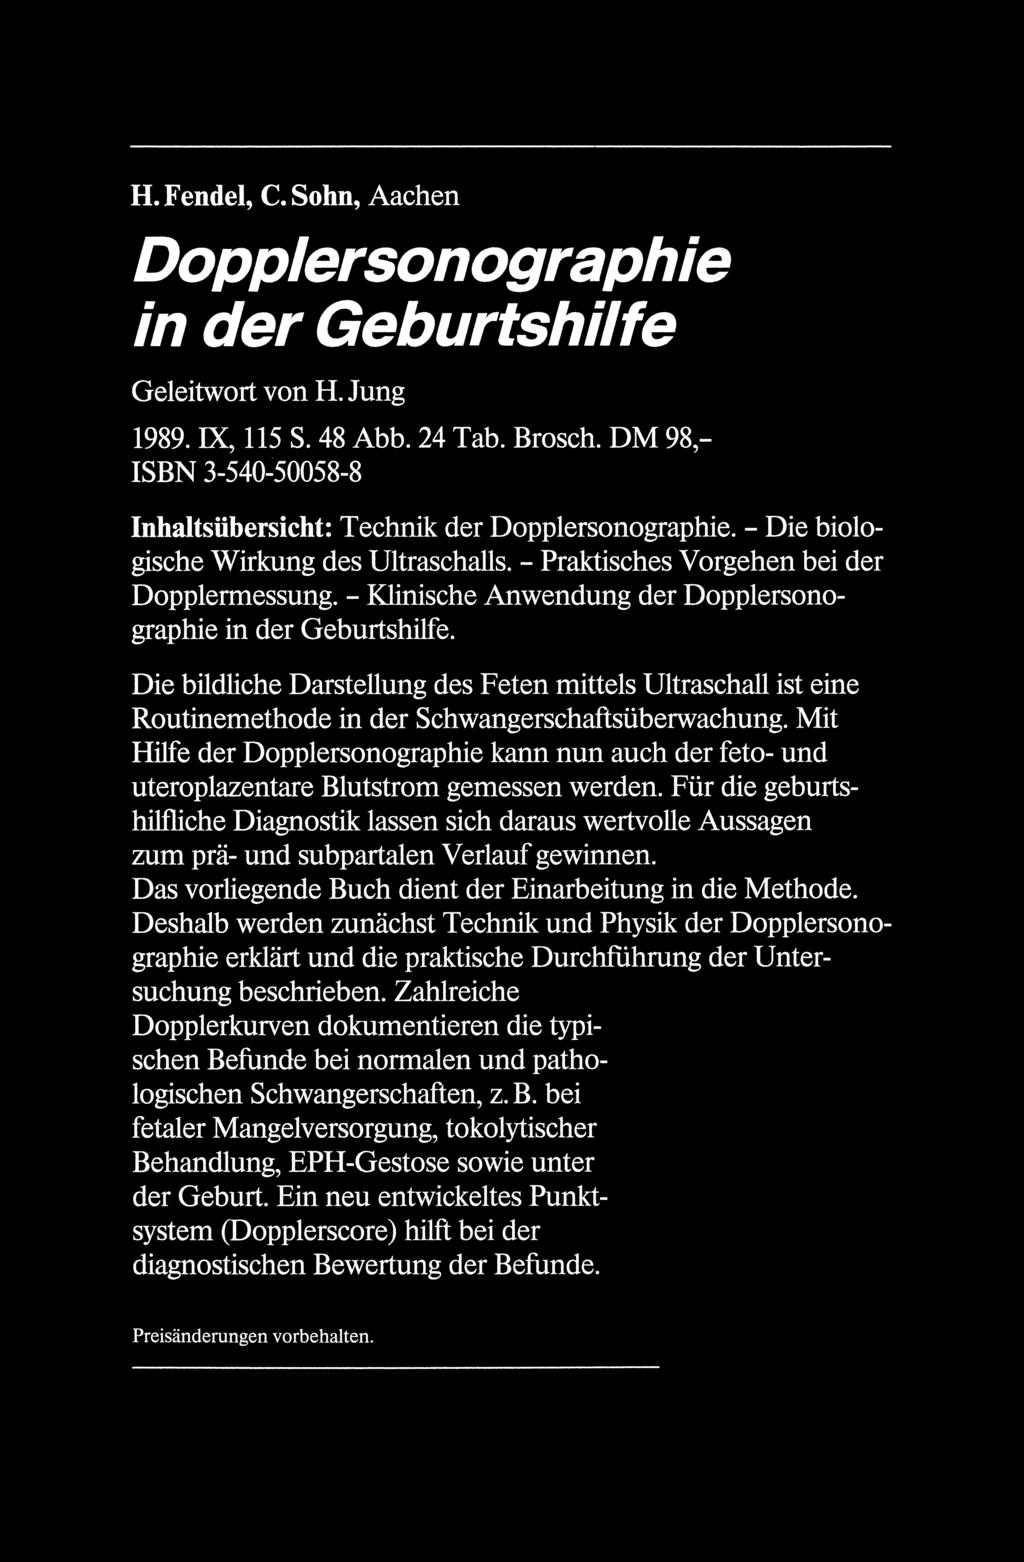 H. Fendel, C. Sohn, Aachen Dopplersonographie in der Geburtshilfe Geleitwort von H. lung 1989. IX, 115 S. 48 Abb. 24 Tab. Brosch.